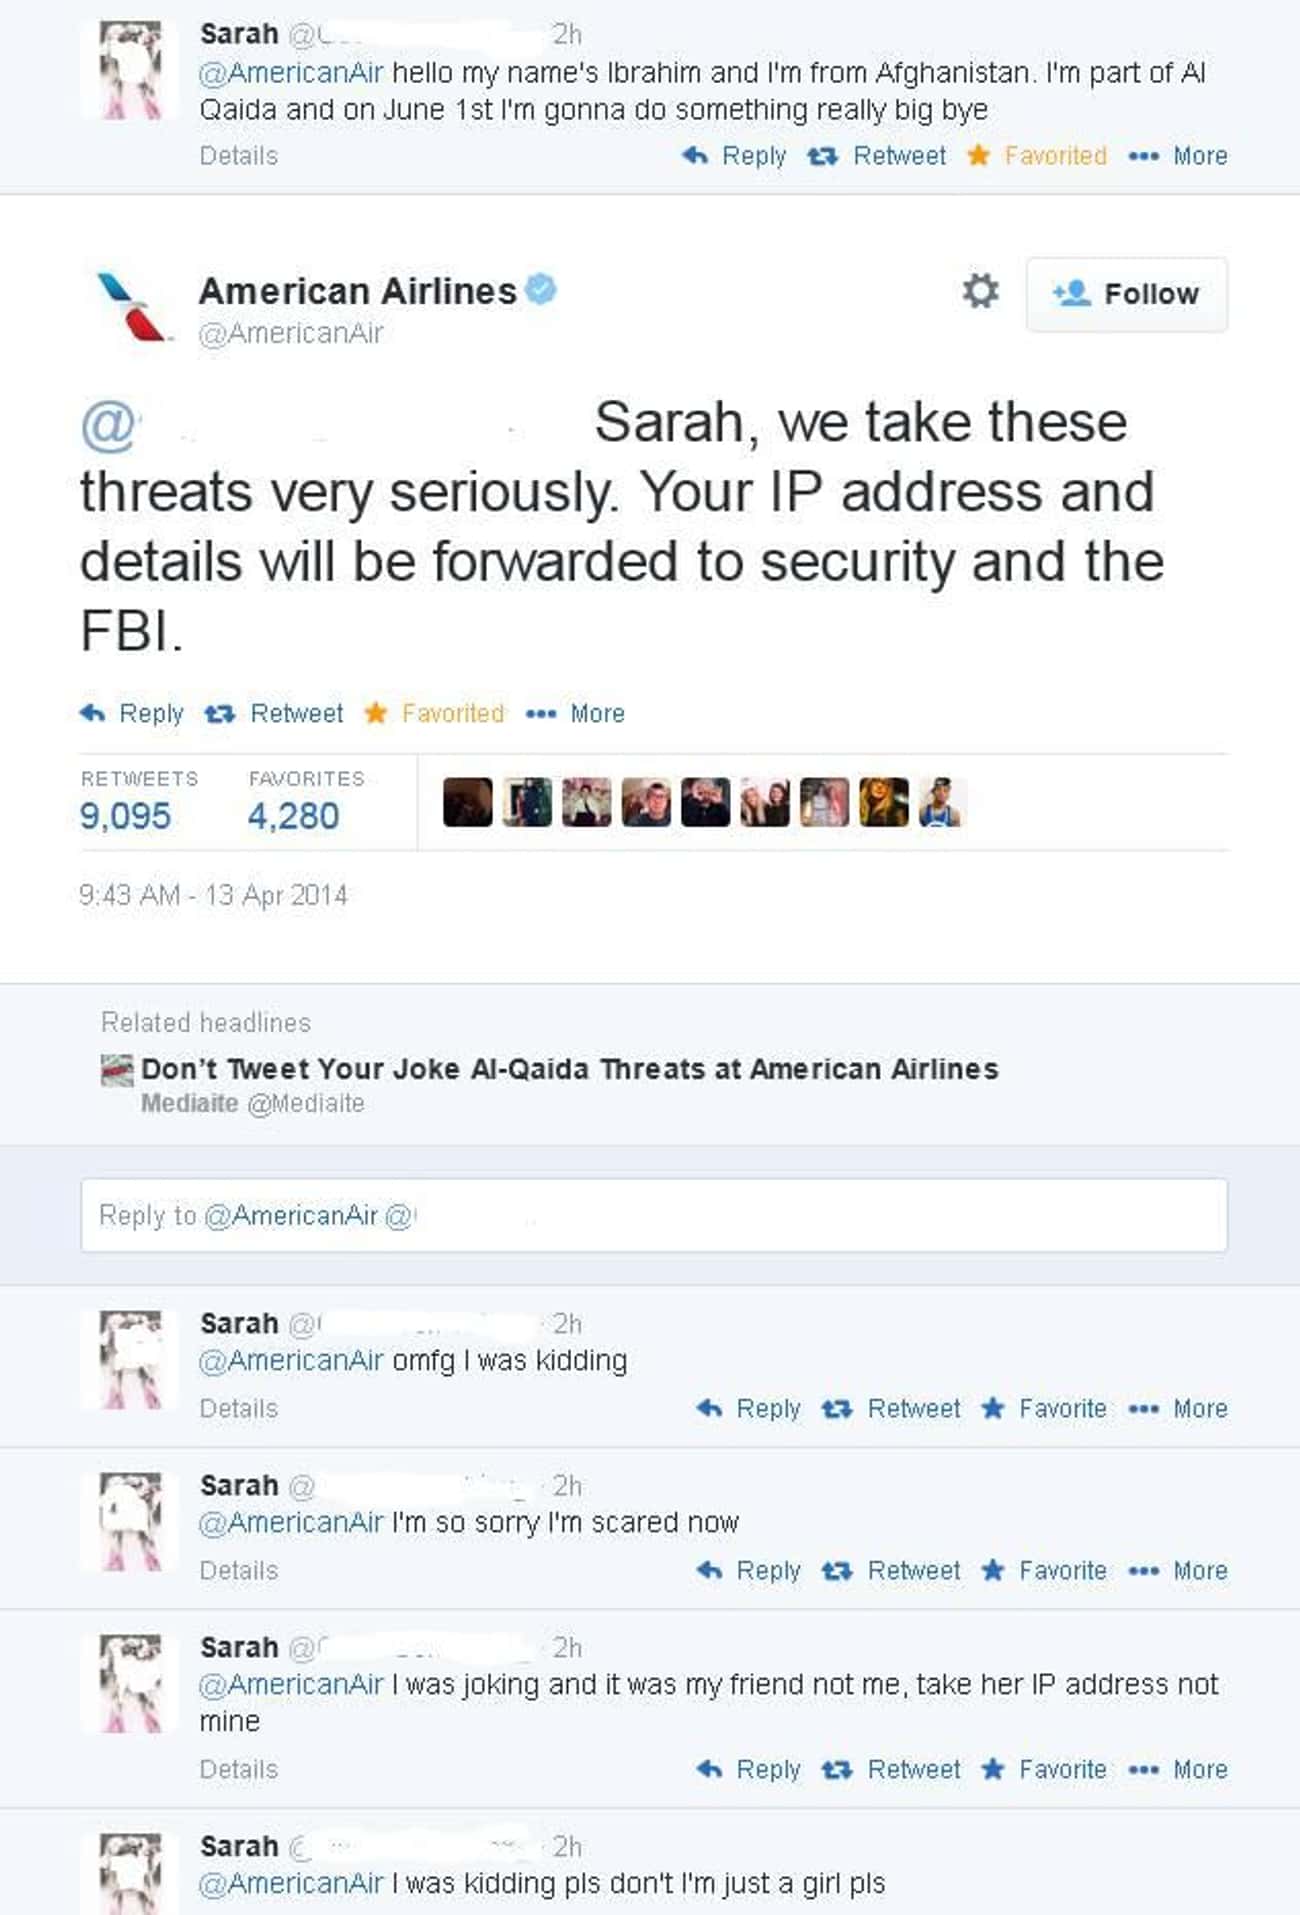 Sarah = 0, Karma = 1 Million